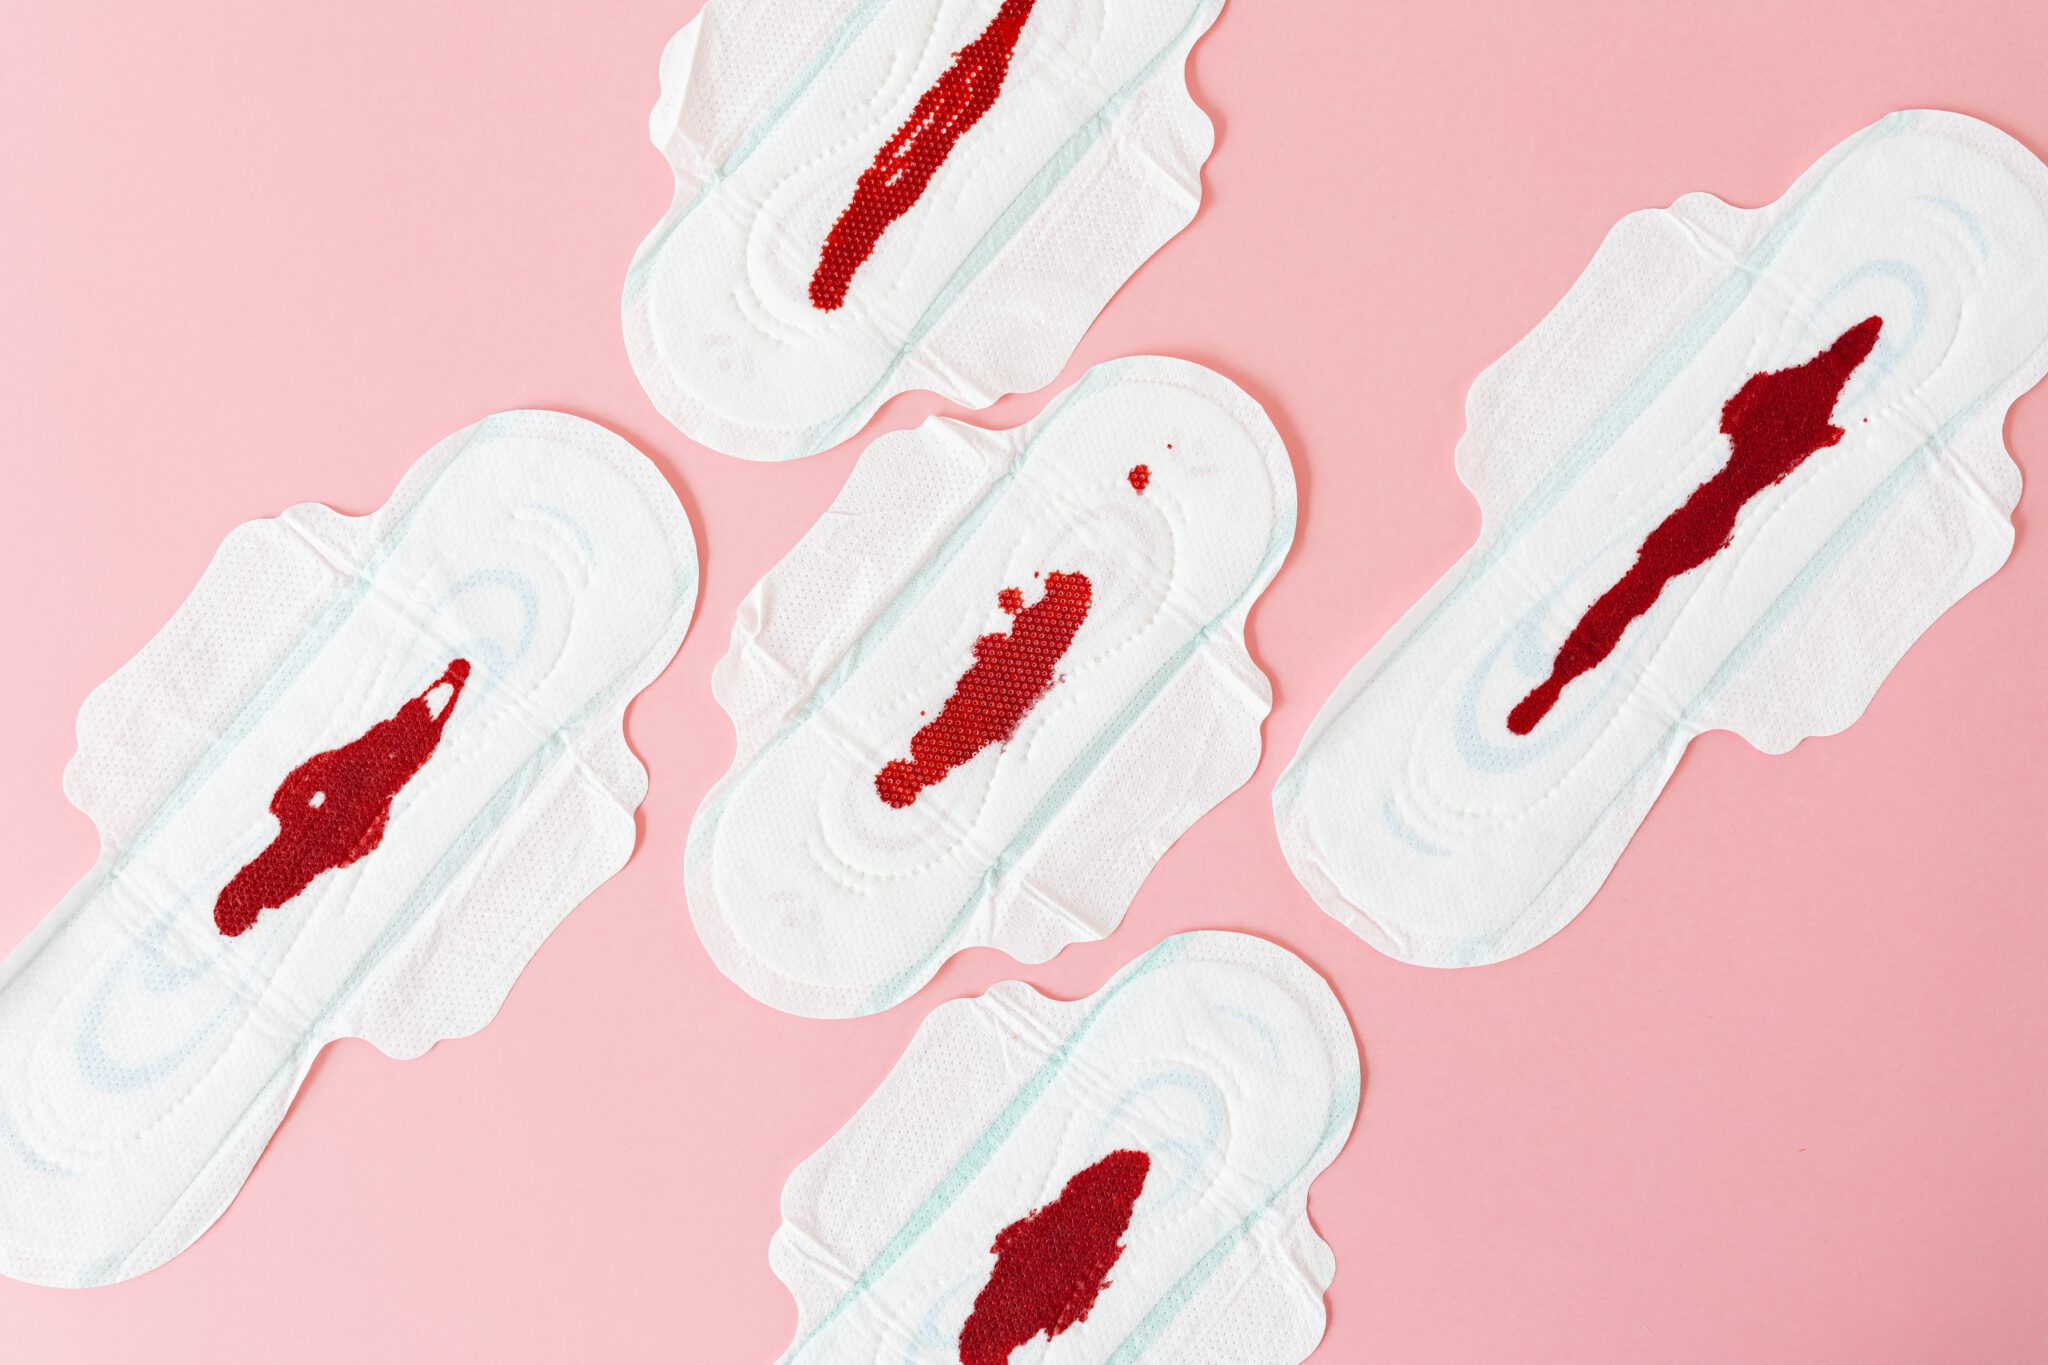 menstruatie - maandverband met bloed